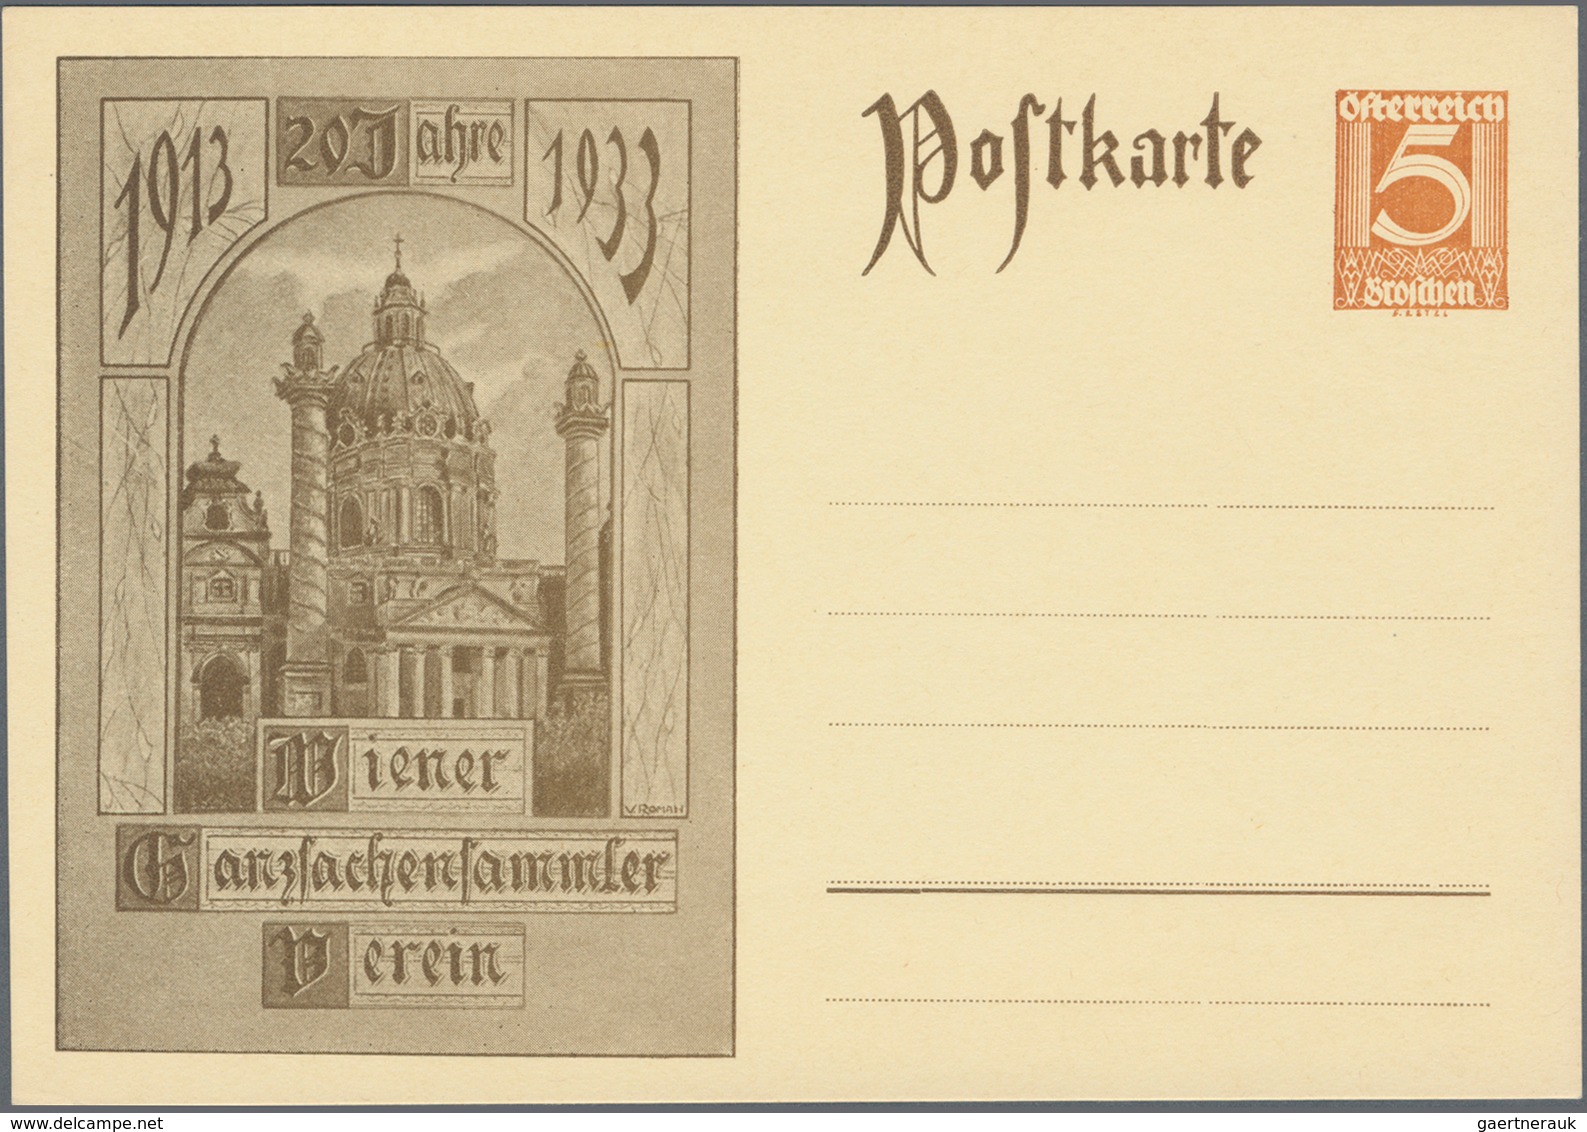 Österreich - Privatganzsachen: 1933. "20 Jahre Wiener Ganzsachensammler-Verein 1913-1933". Set von 1